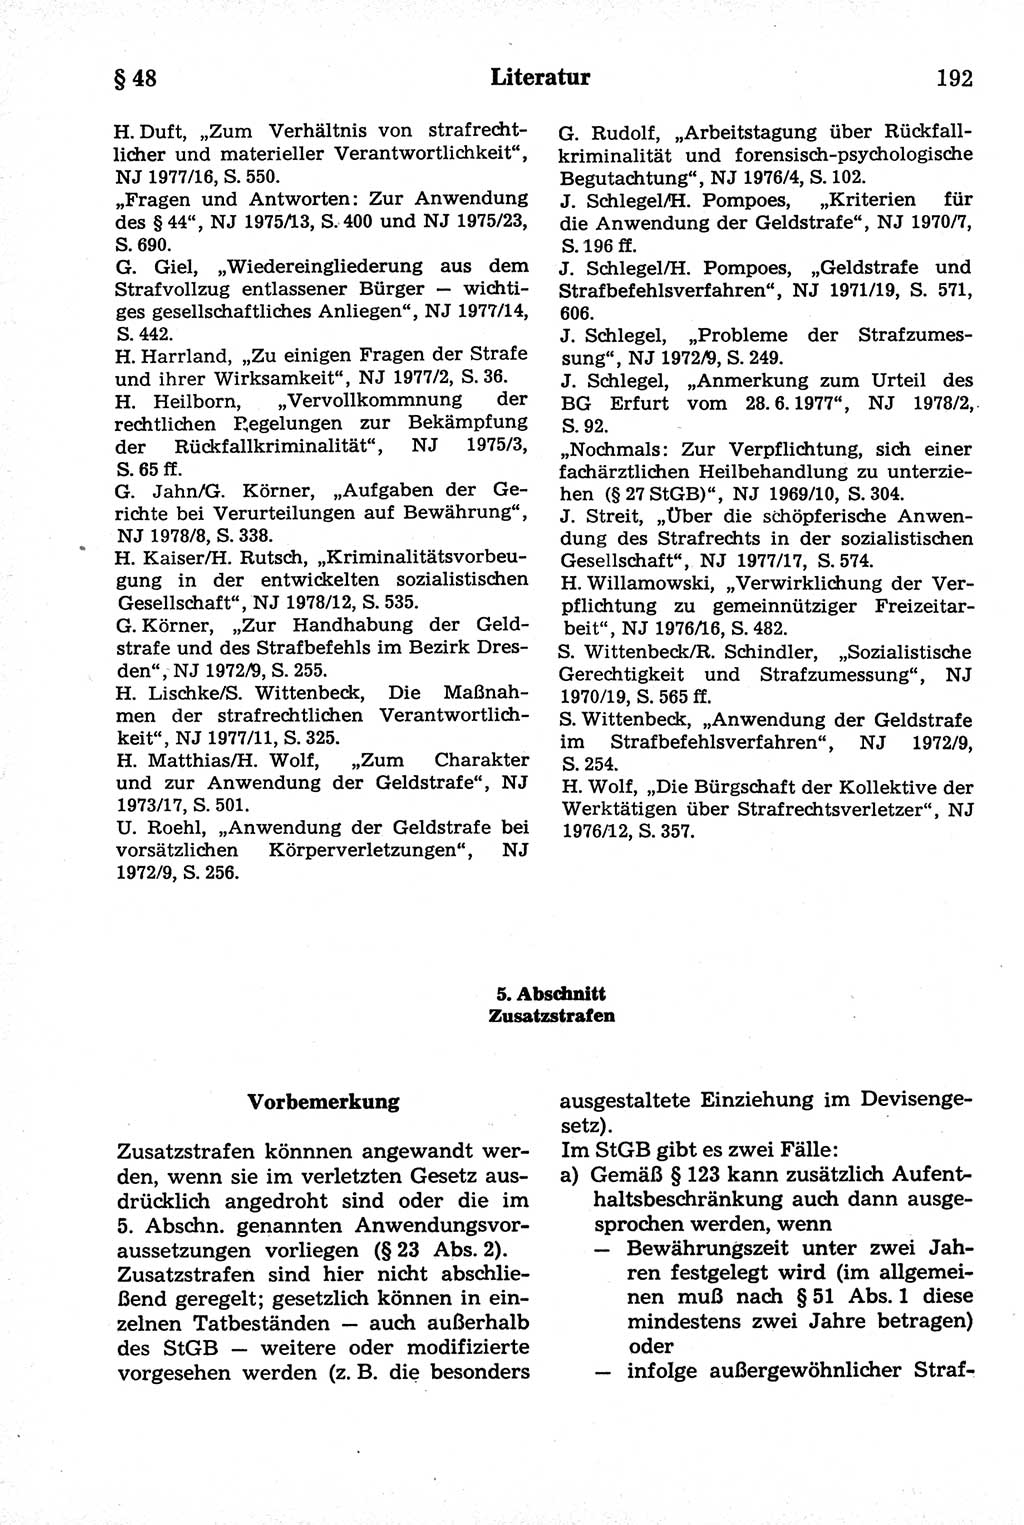 Strafrecht der Deutschen Demokratischen Republik (DDR), Kommentar zum Strafgesetzbuch (StGB) 1981, Seite 192 (Strafr. DDR Komm. StGB 1981, S. 192)